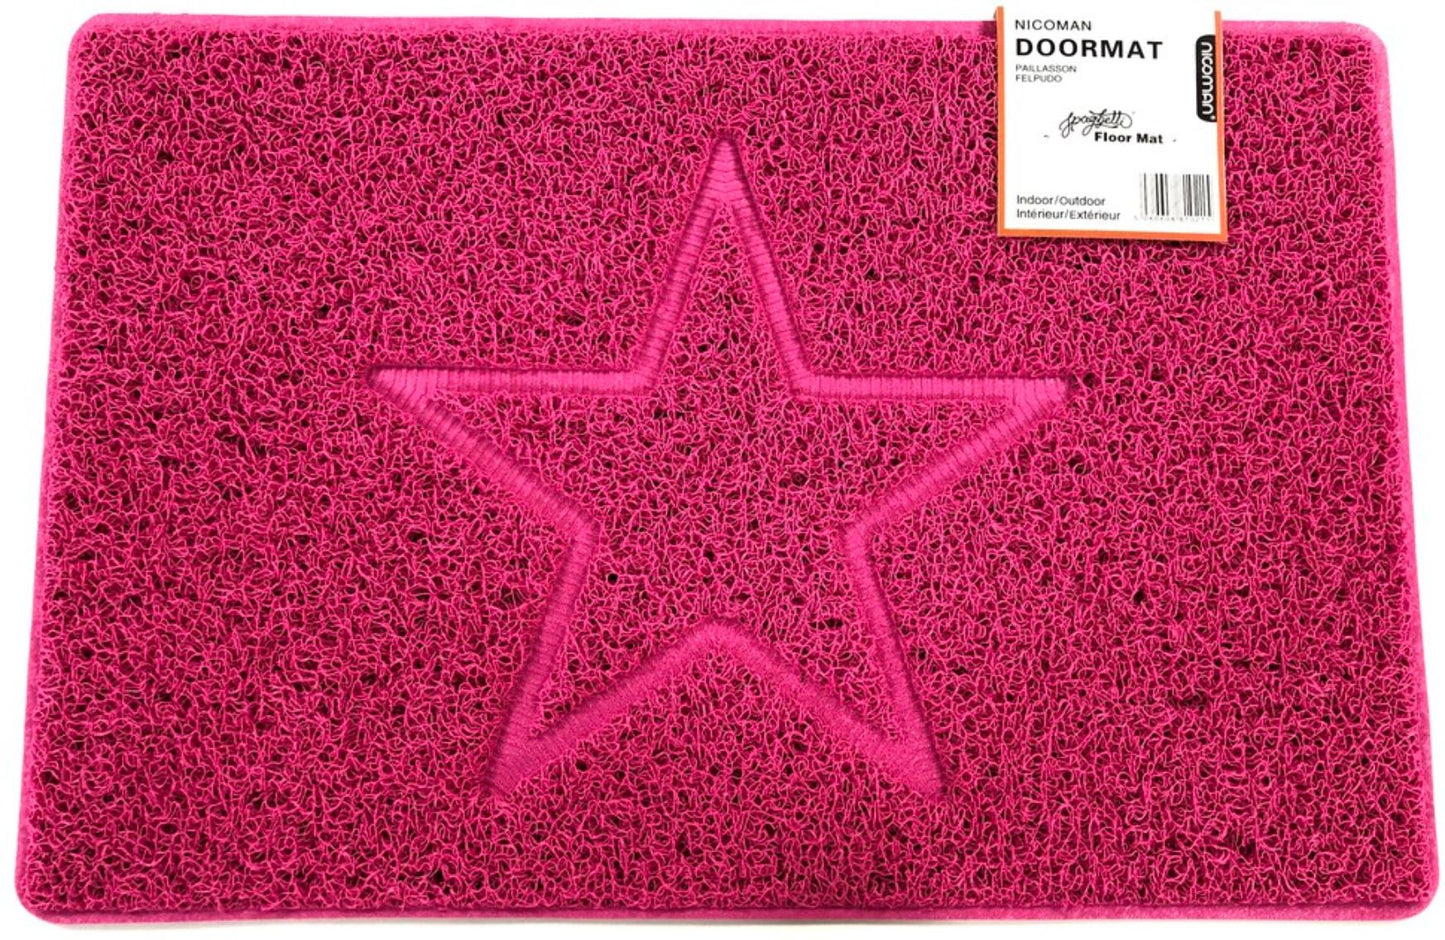 Nicoman Star Door mat